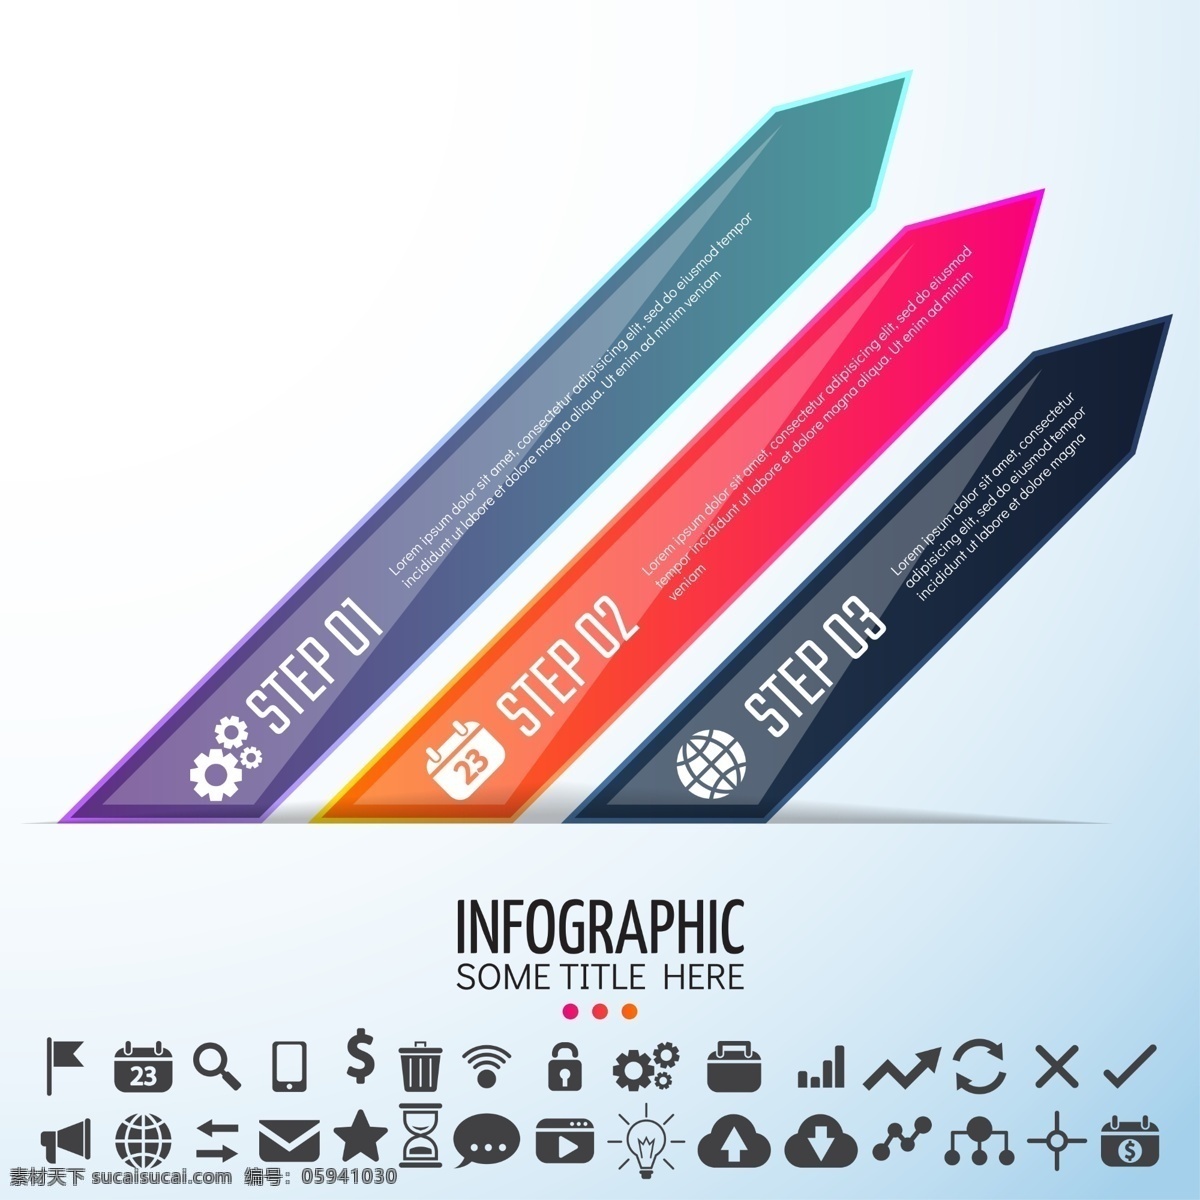 彩色 三角 矩形 数据 源文件 psd源文件 表格 记录 商务 设计素材 统计 信息 样本 装饰素材